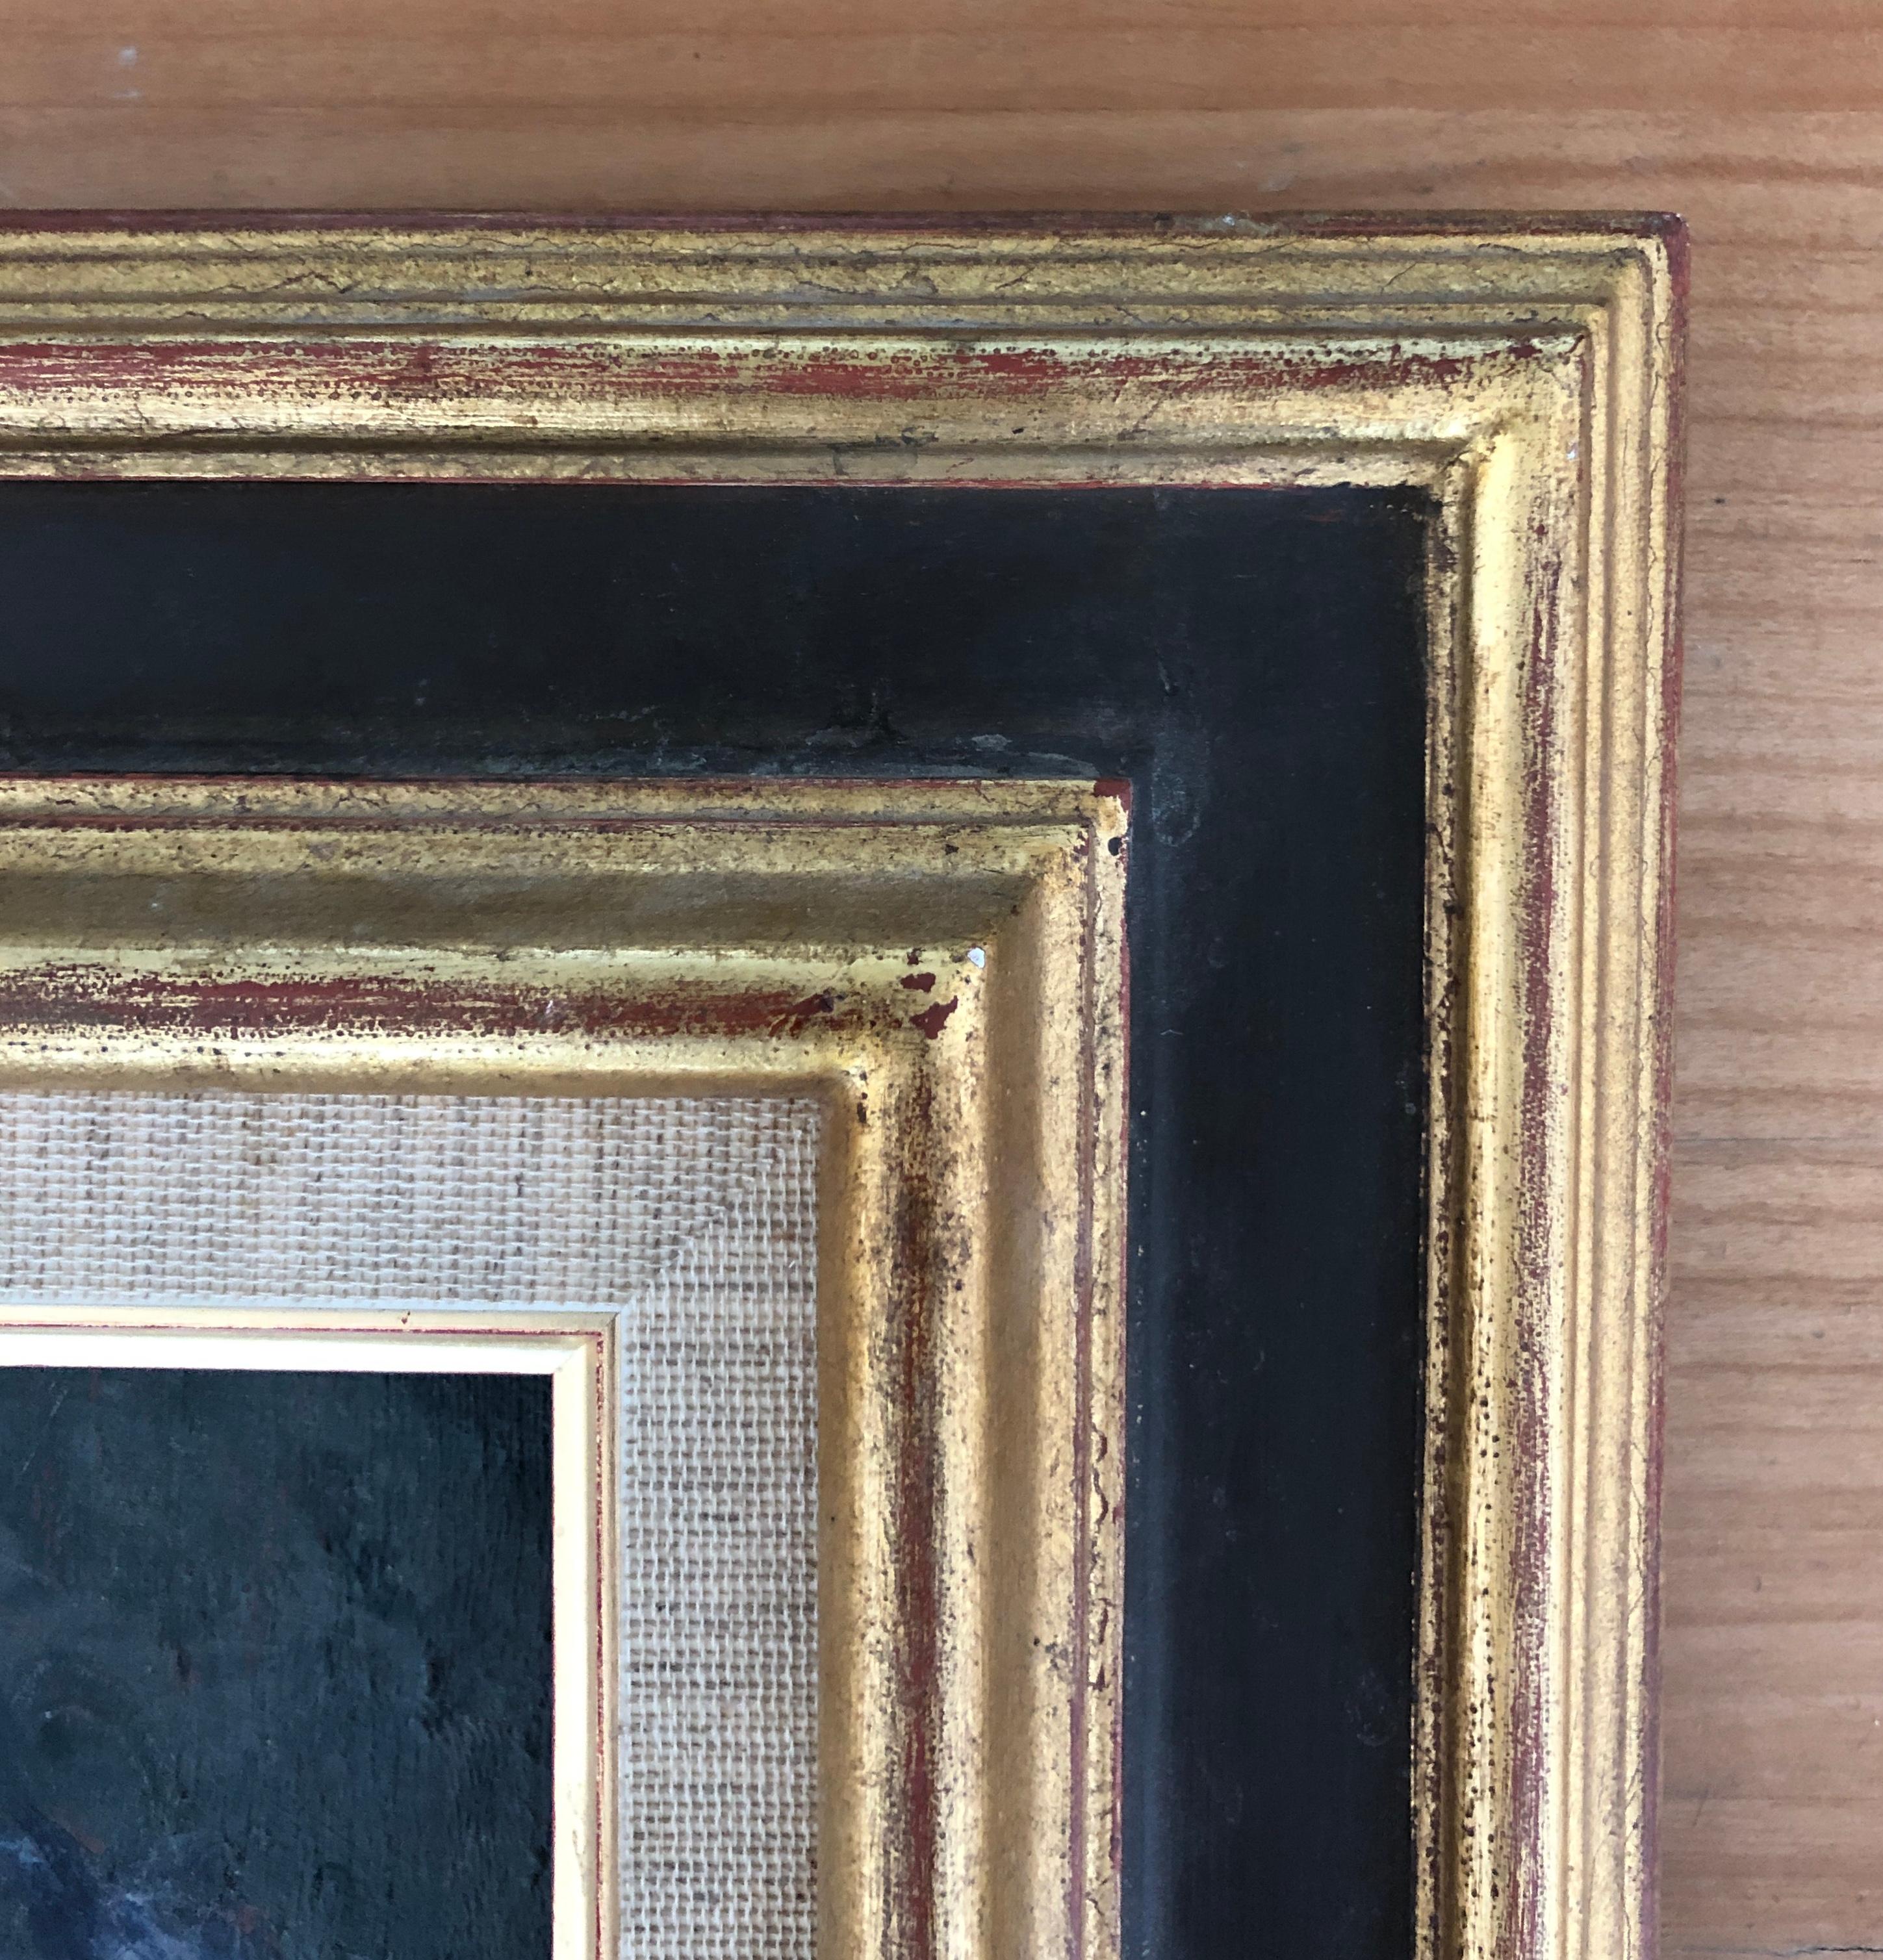 Work on canvas
Golden wooden frame
52 x 37.2 x 4 cm